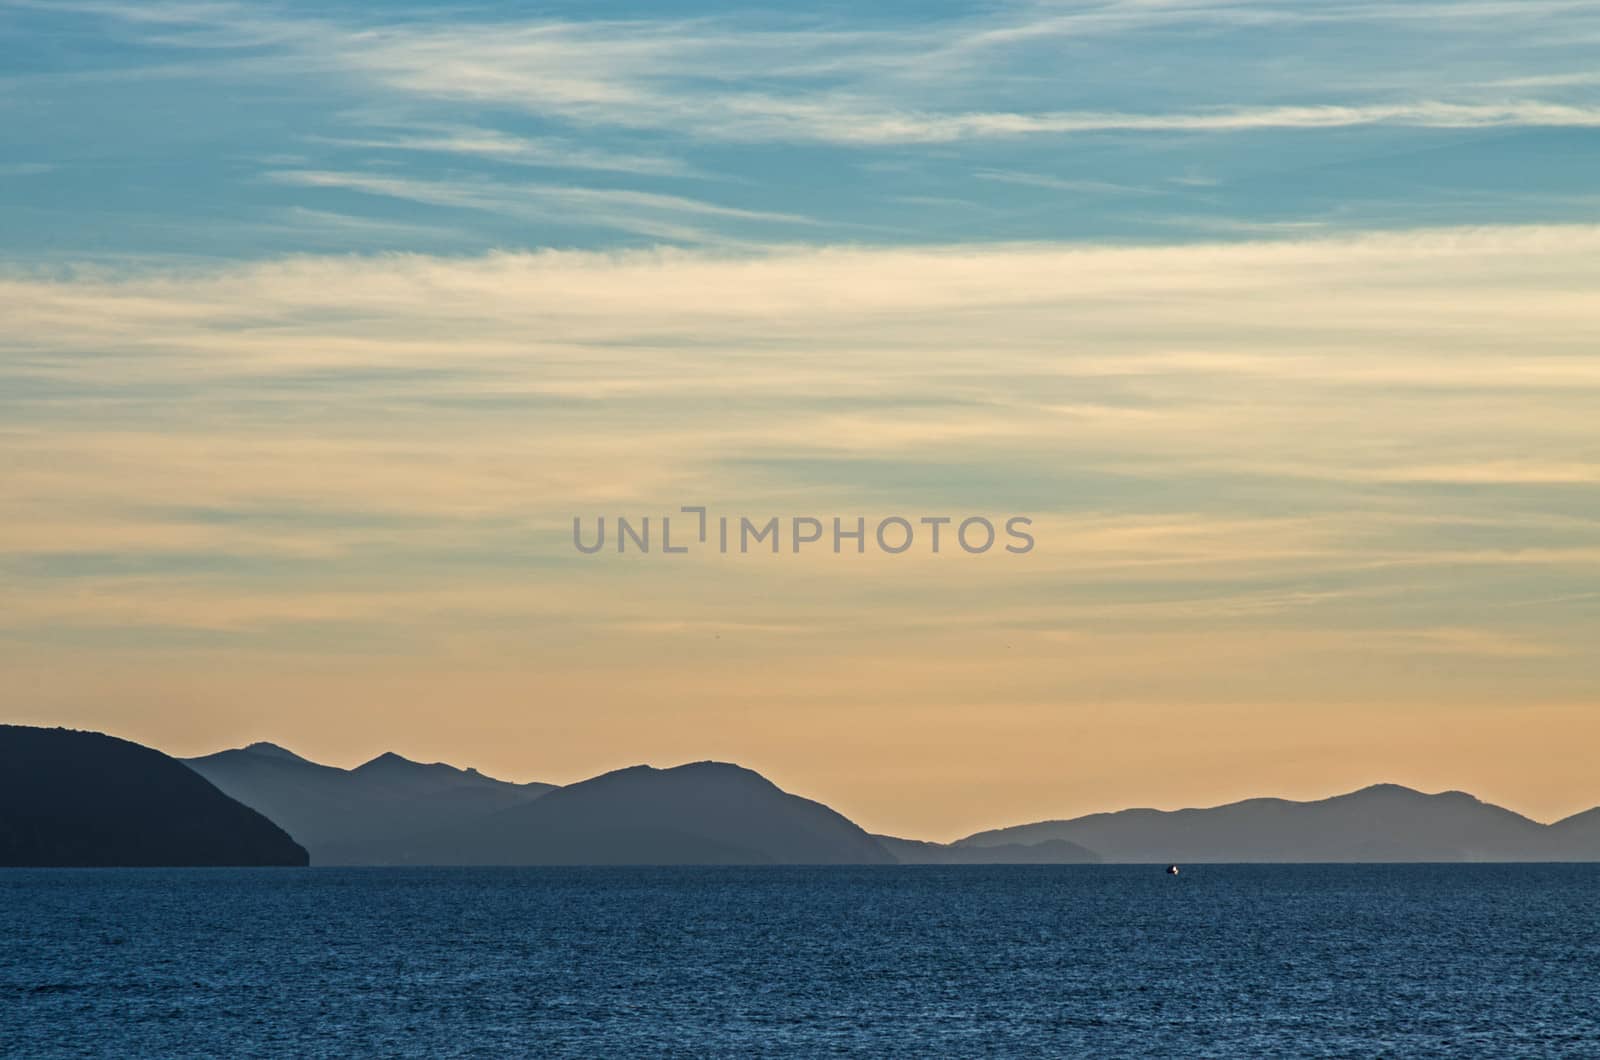 View of Elba Island from the tuscany coast